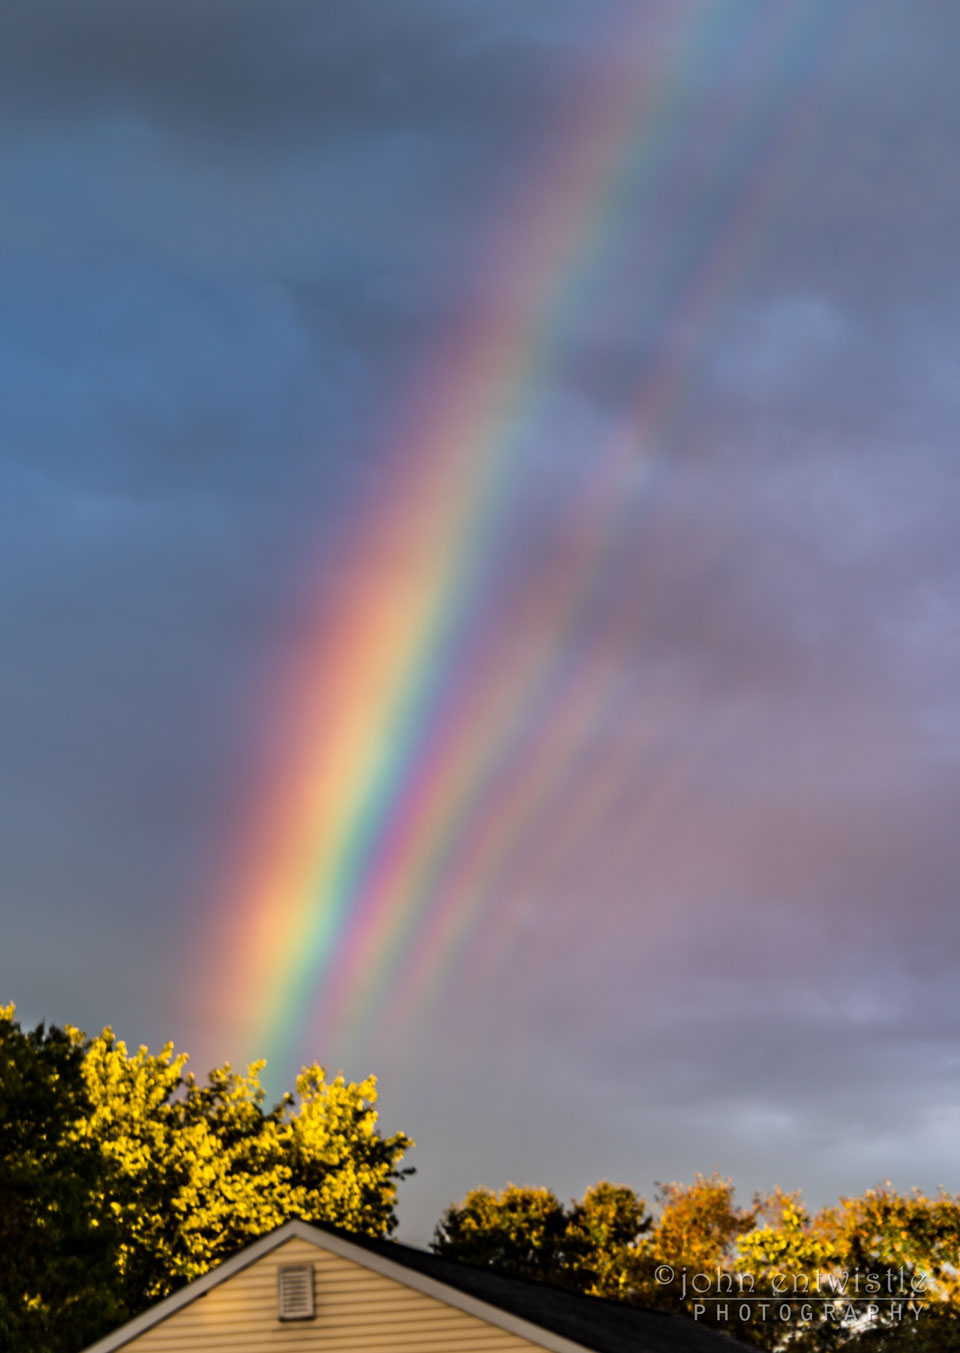 Das Bild zeigt einen Regenbogen mit einem markanten Interferenzmuster, das nur entsteht, wenn ale Regentröpfchen fast gleich groß sind. Im Vordergrund sind ein Dachgiebel und Bäume zu sehen.